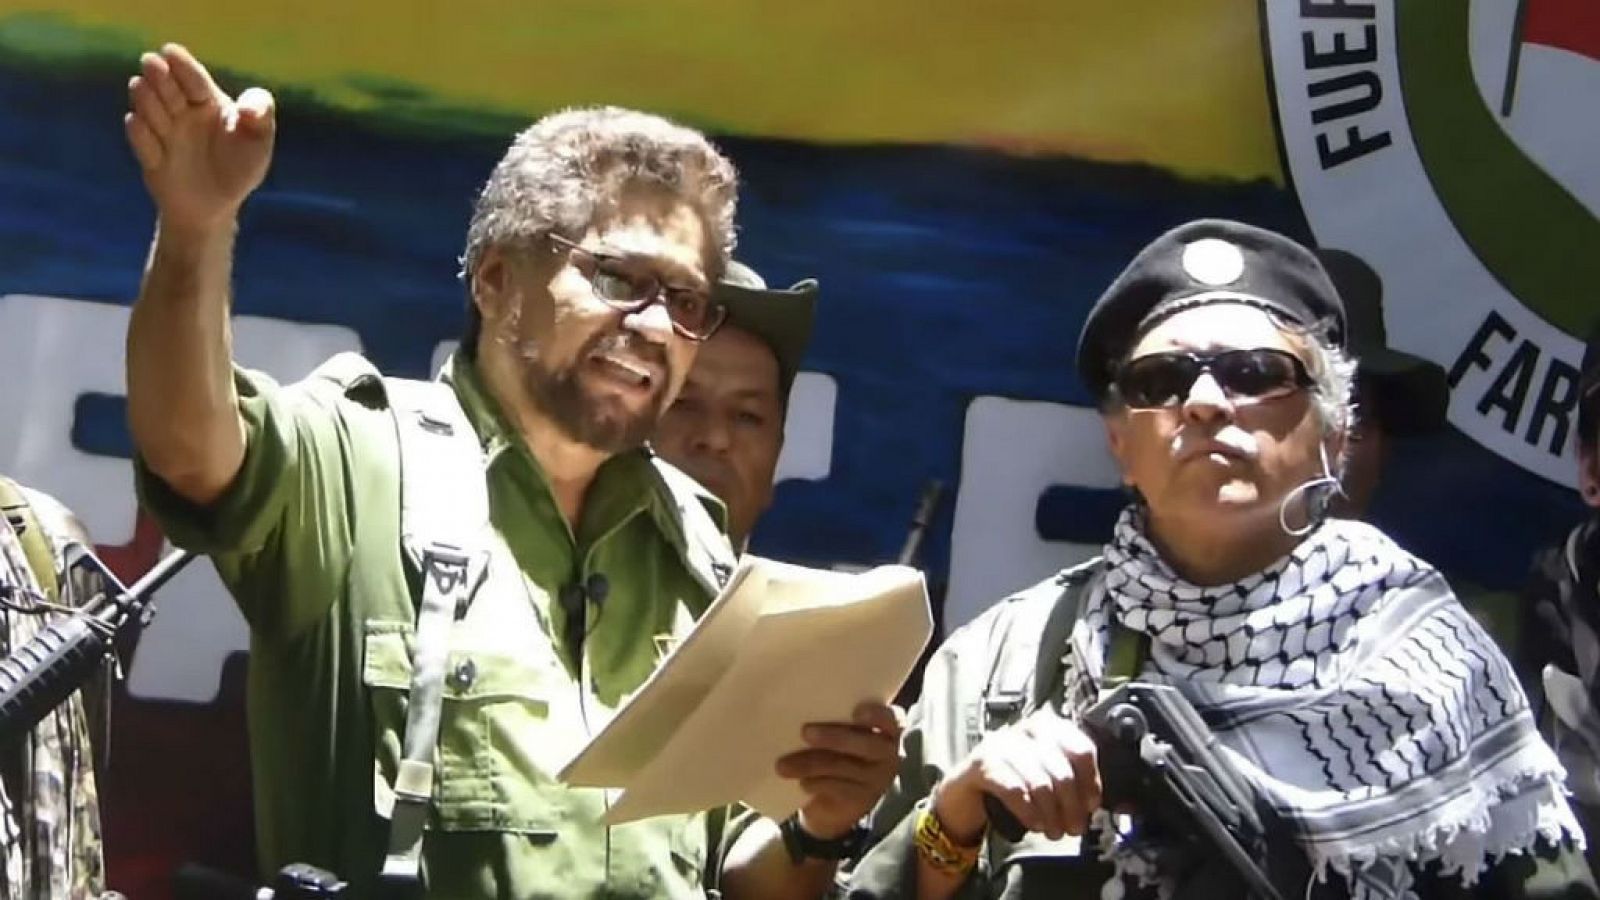 Cinco continentes - Colombia teme a las disidencias de las FARC - Escuchar ahora